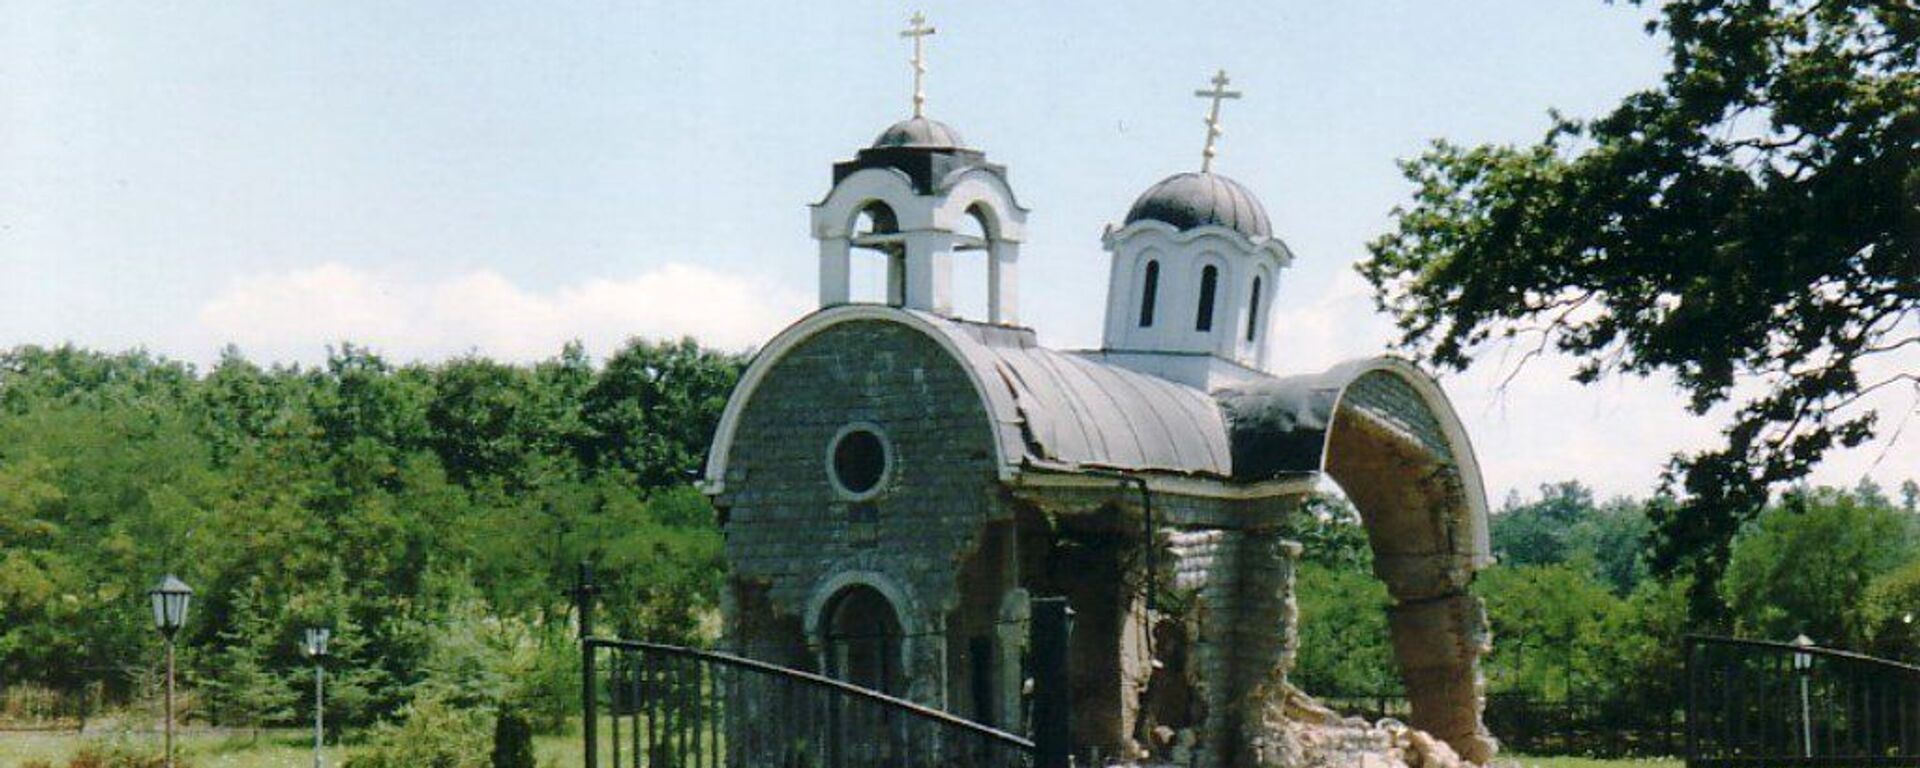 Crkva Svete Trojice u Petriću na Kosmetu uništena u avgustu 1999. - Sputnik Srbija, 1920, 25.05.2021